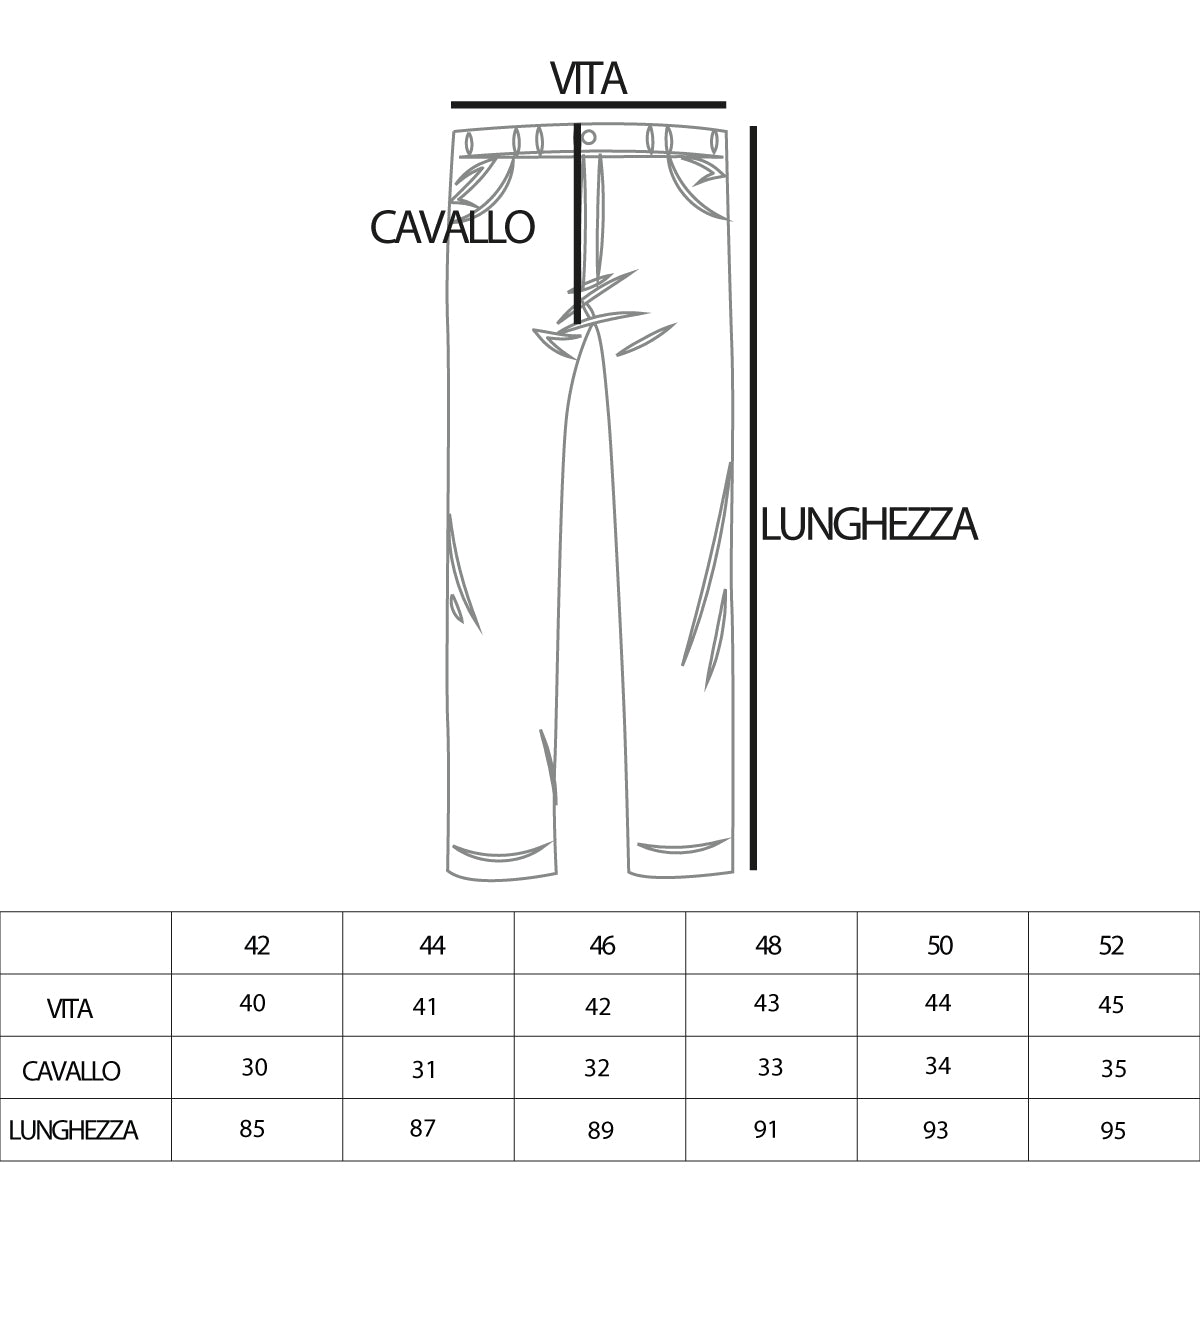 Pantaloni Uomo Jeans Cinque Tasche Nero Rotture Taglio Al Ginocchio GIOSAL-P5084A